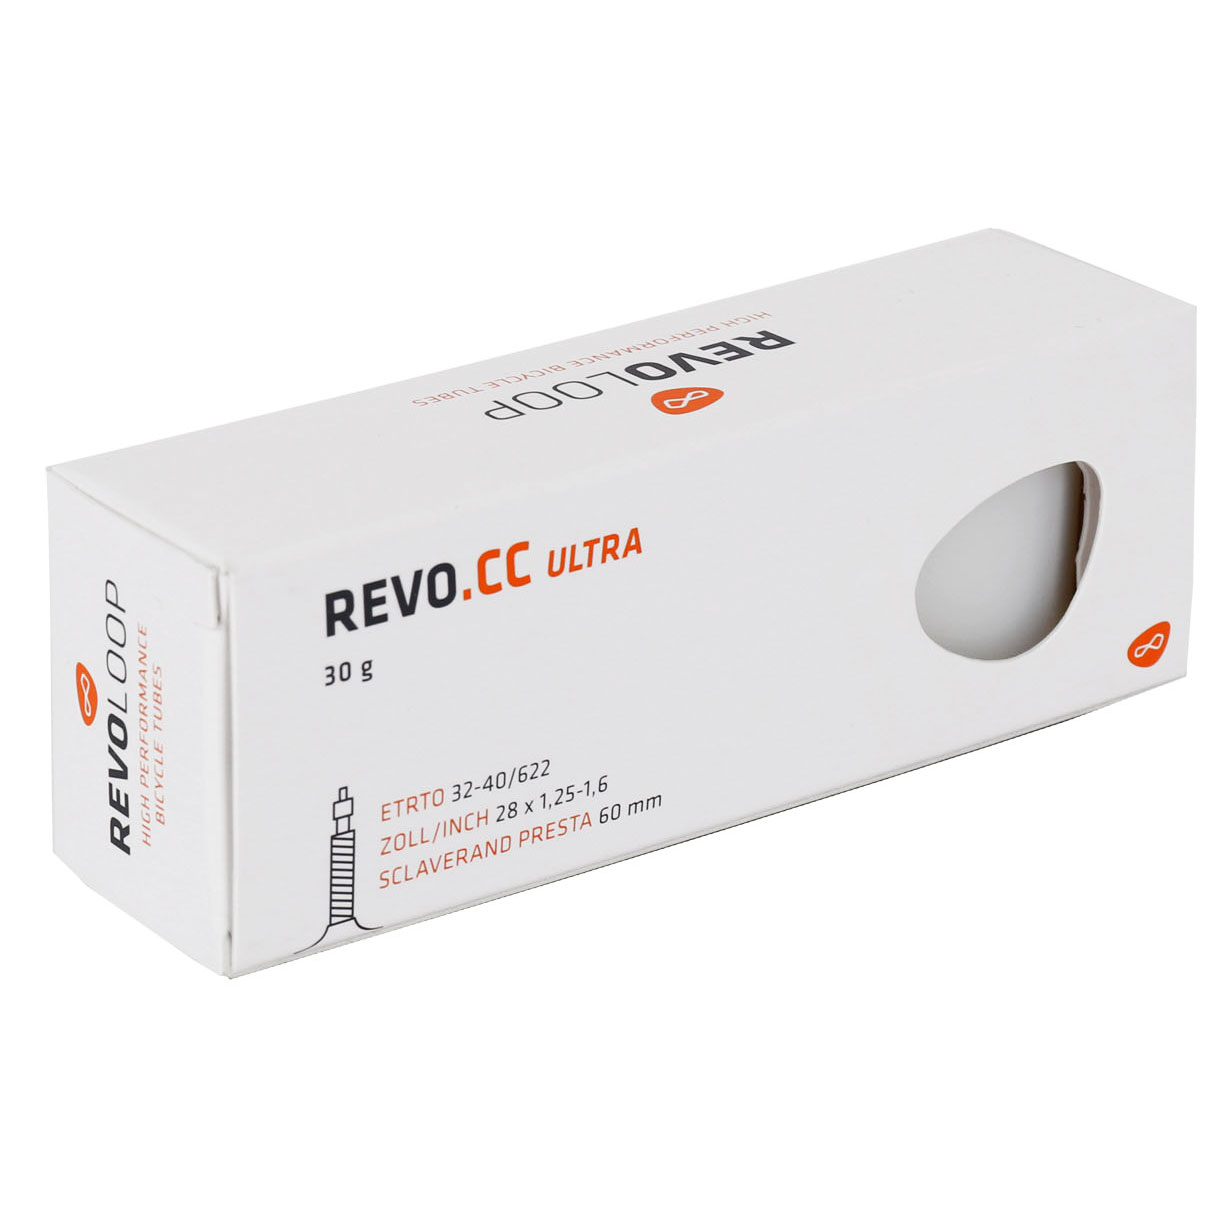 Picture of REVOLOOP REVO.CC Ultra Tube - 32-40/622 - Presta 60mm